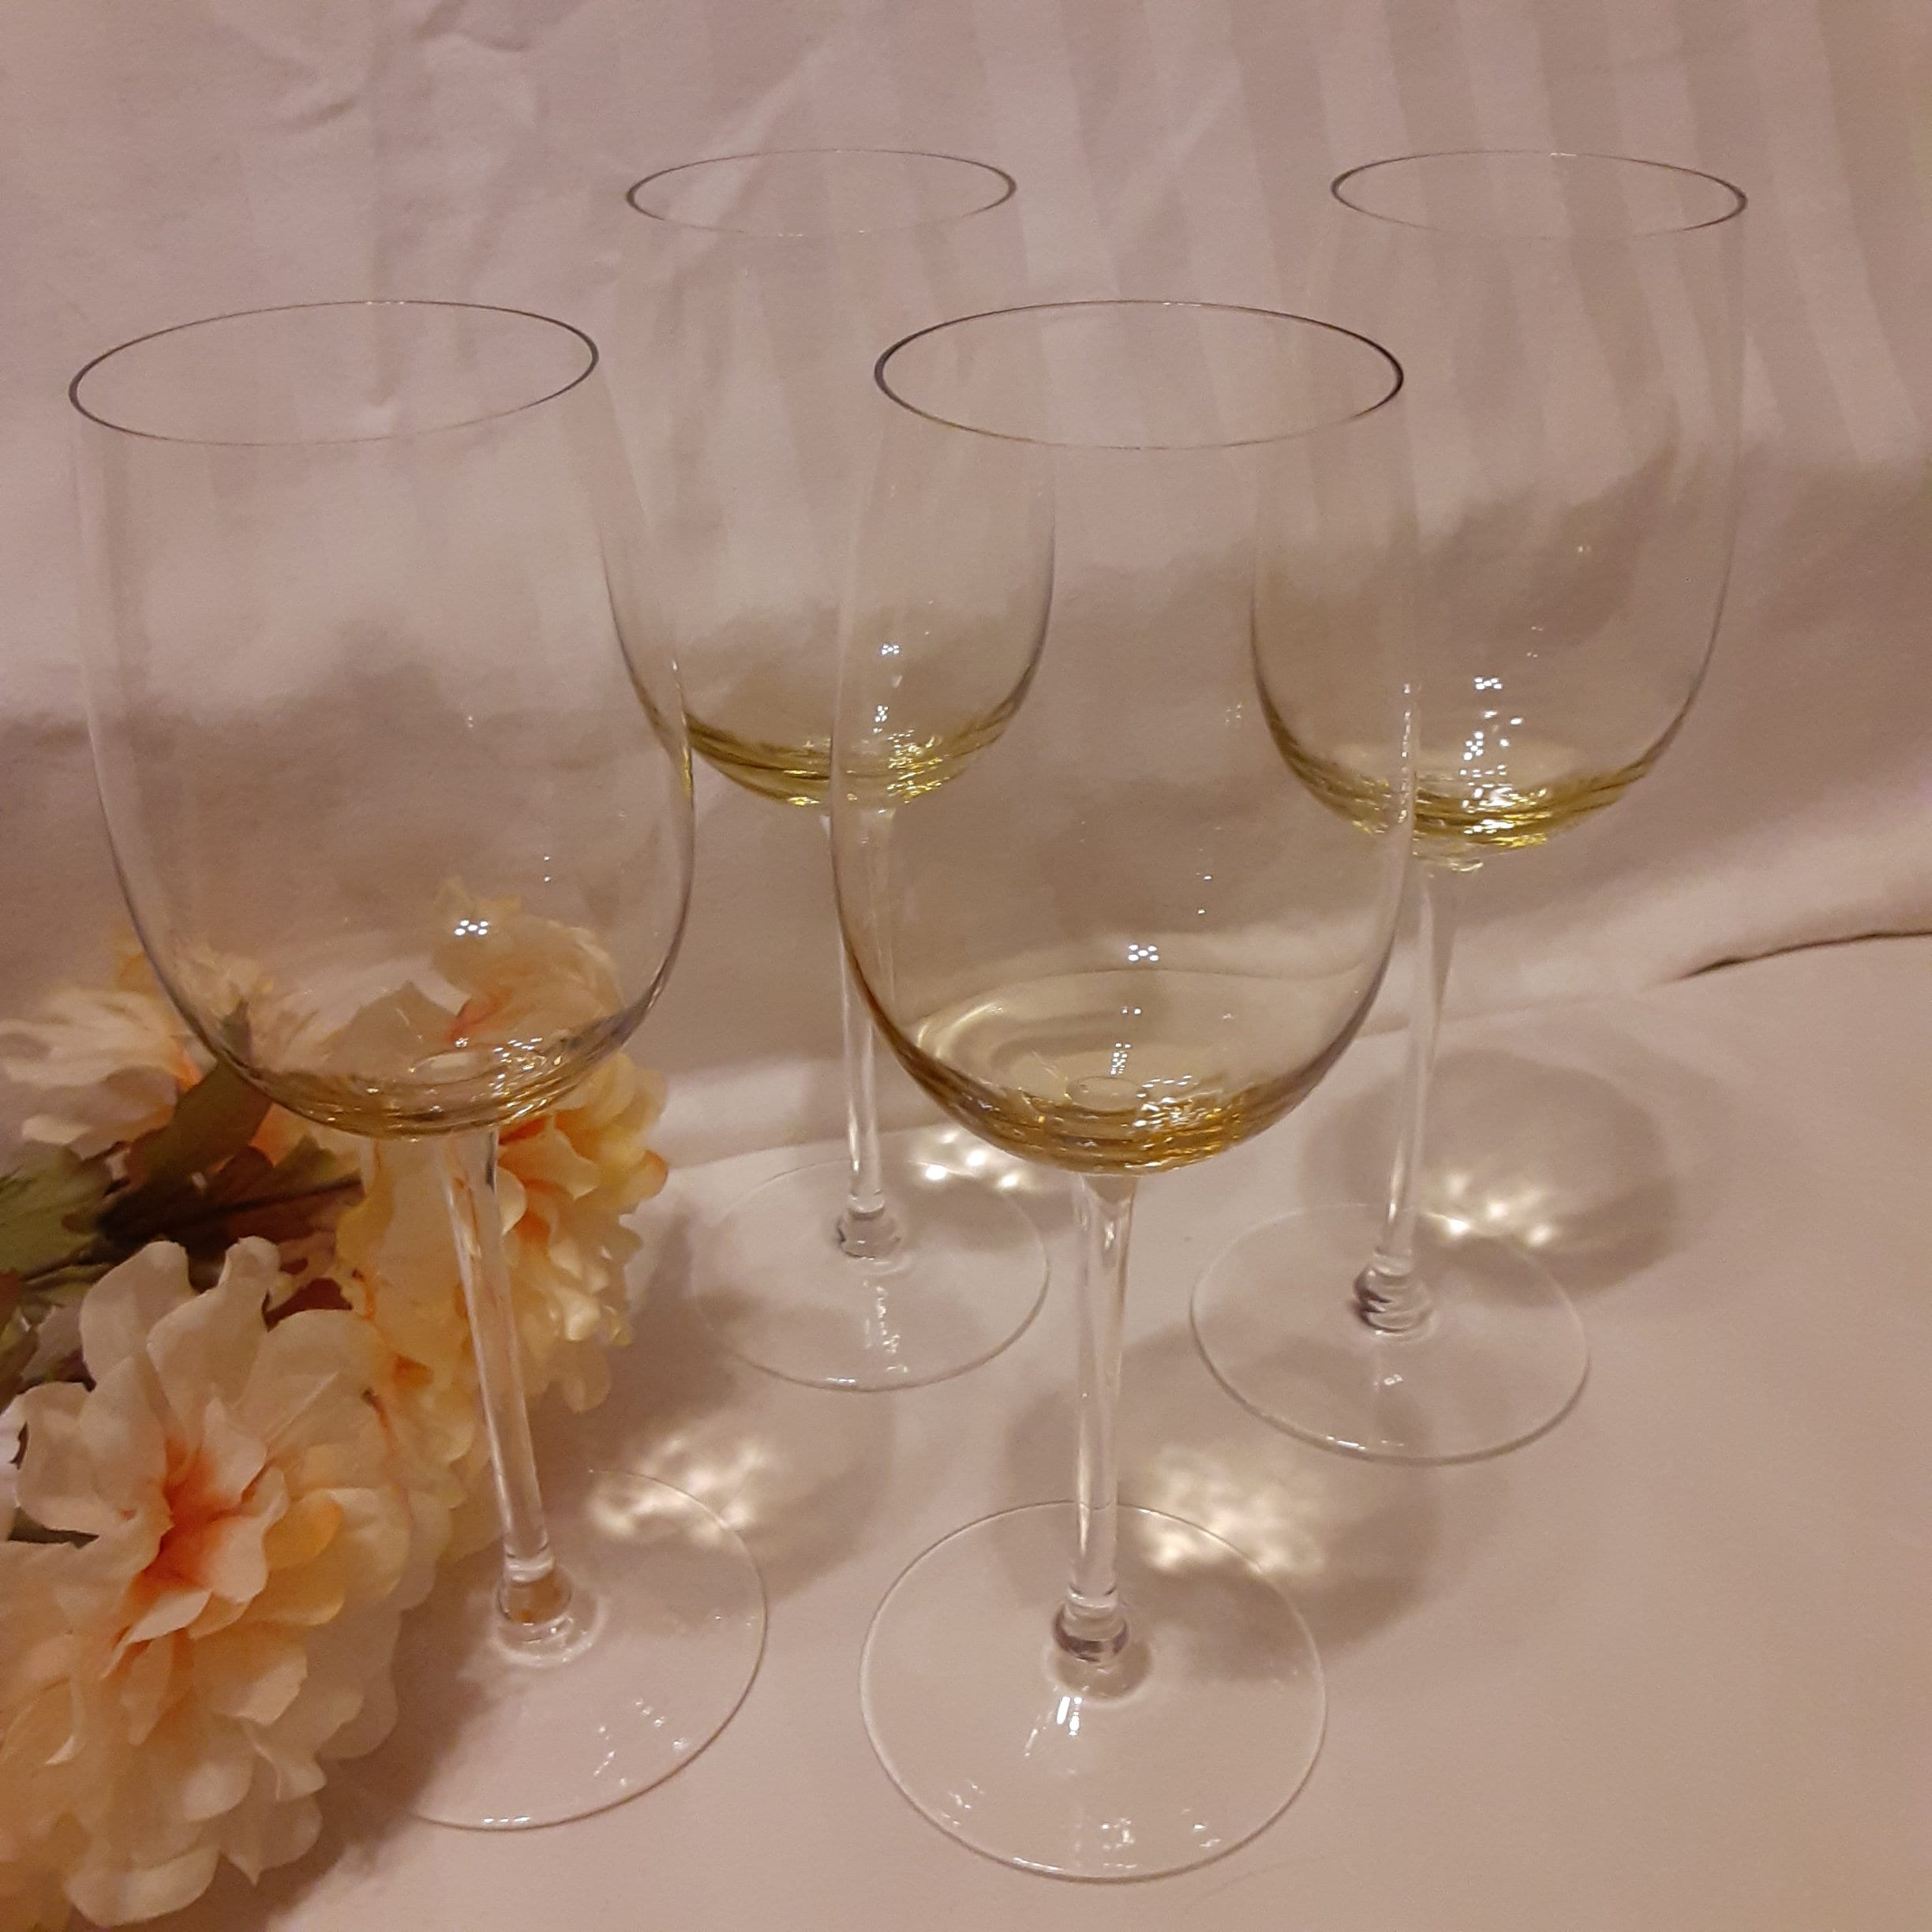 Vintage Amber Wine Glasses Set of 2 16.5 oz - Unique Stem Colored Burgundy  Goblet Glass - Premium St…See more Vintage Amber Wine Glasses Set of 2 16.5